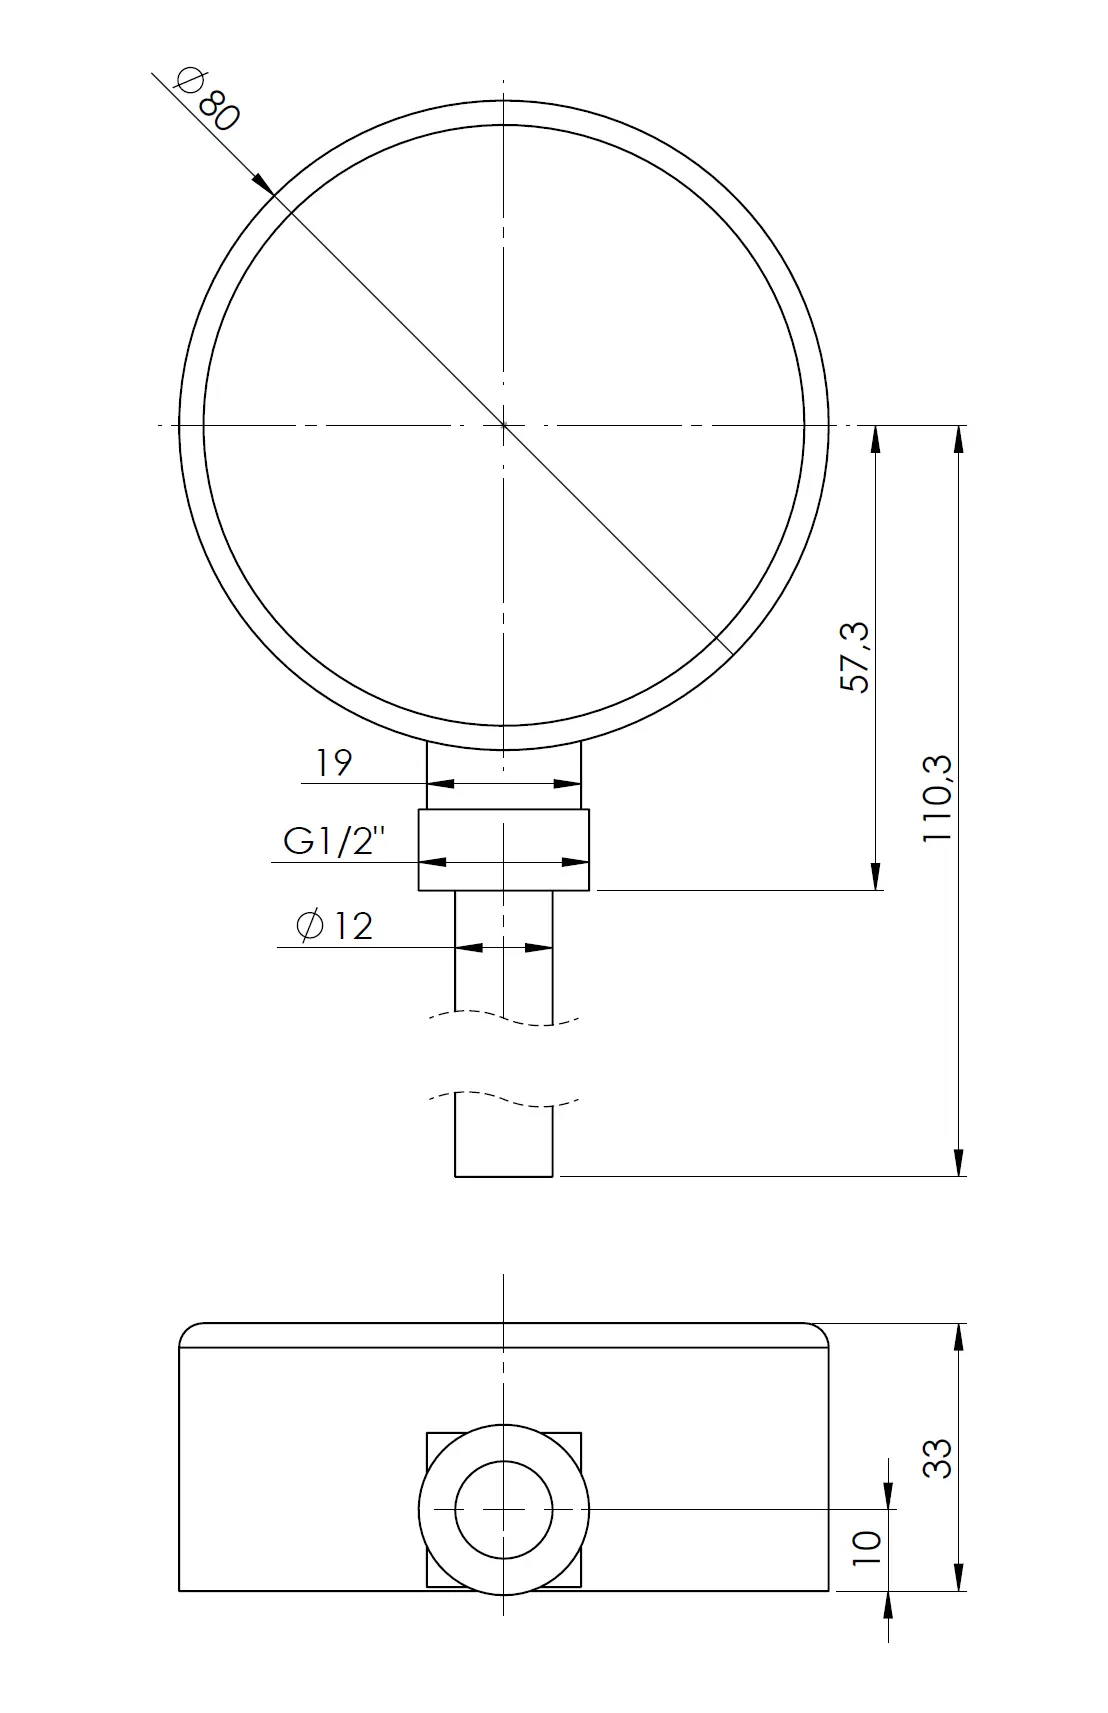 Termometr bimetaliczny BiTh 80, fi80 mm, 0÷120°C, L 63 mm, G1/2", rad, kl. 2 - budowa